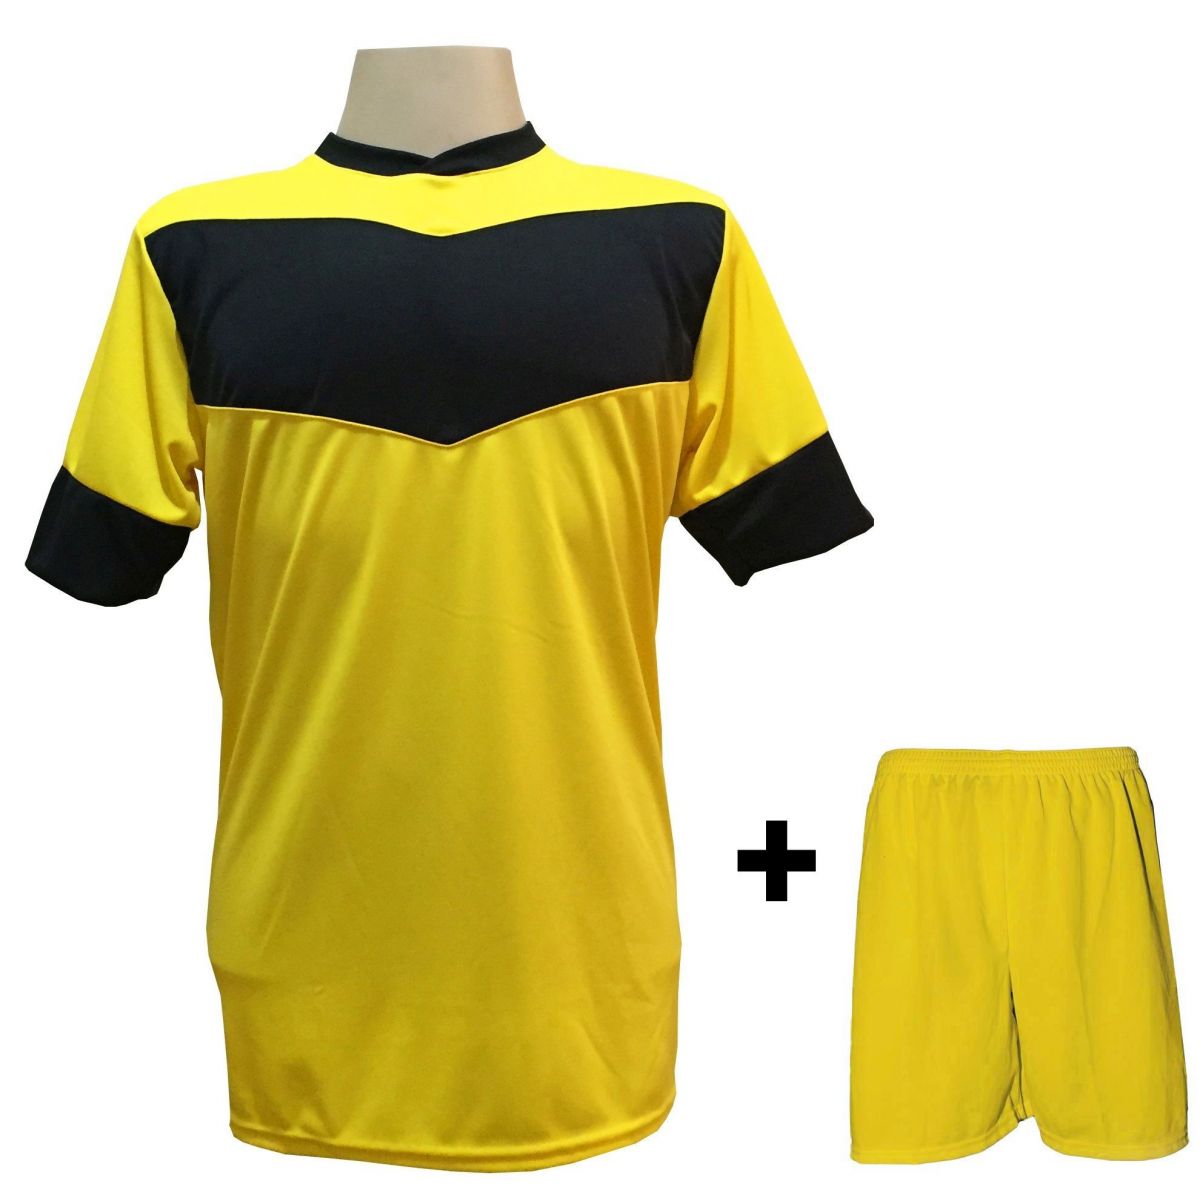 Uniforme Esportivo com 18 camisas modelo Columbus Amarelo/Preto + 18 calções modelo Madrid Amarelo + Brindes